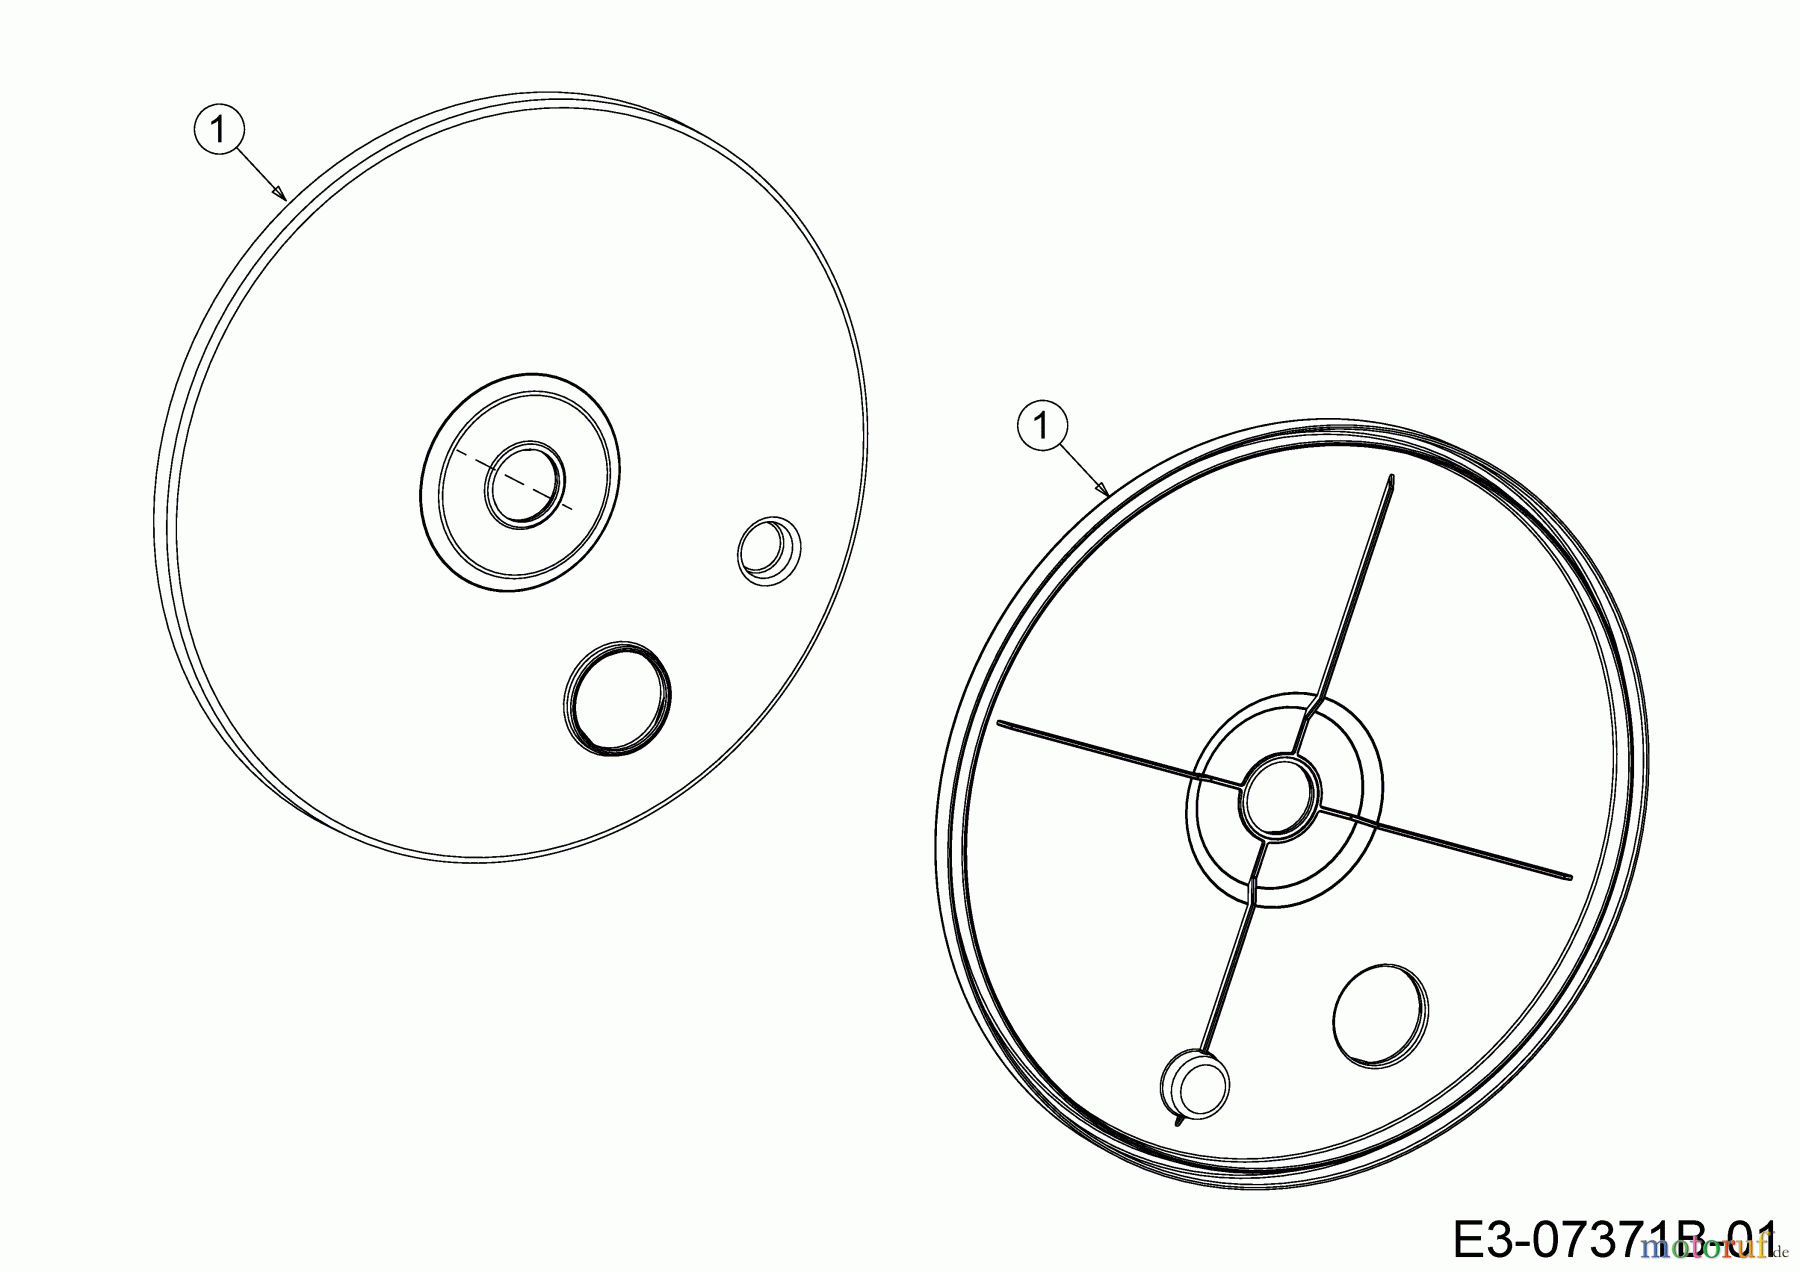  Gutbrod Tondeuse thermique tractée HB 53 AB 12ABPV5L690  (2017) Couvercle de protection roues